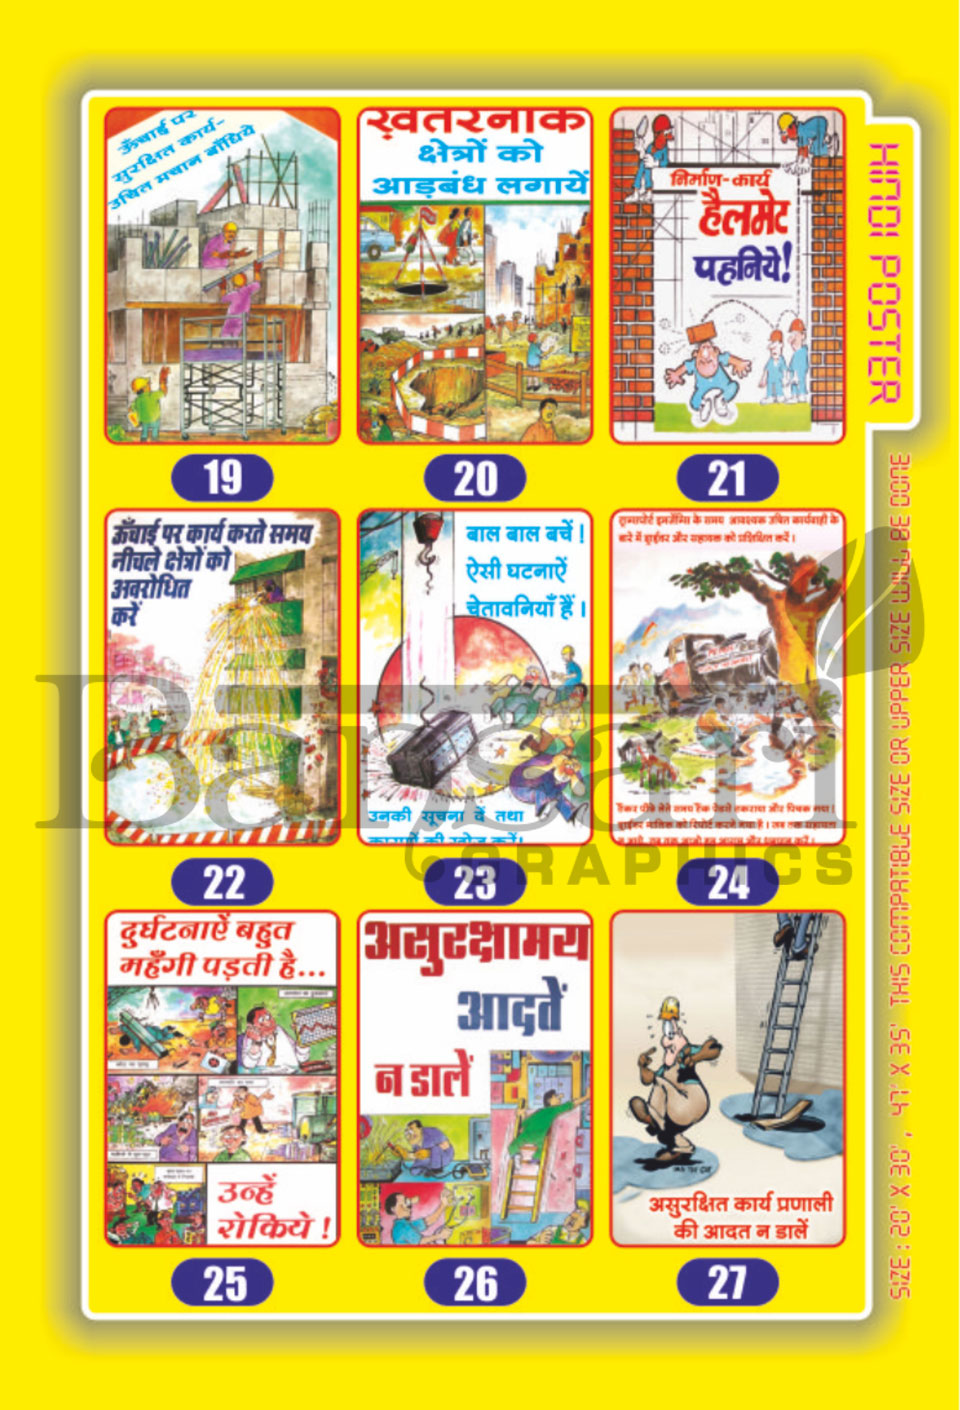 Hindi Poster